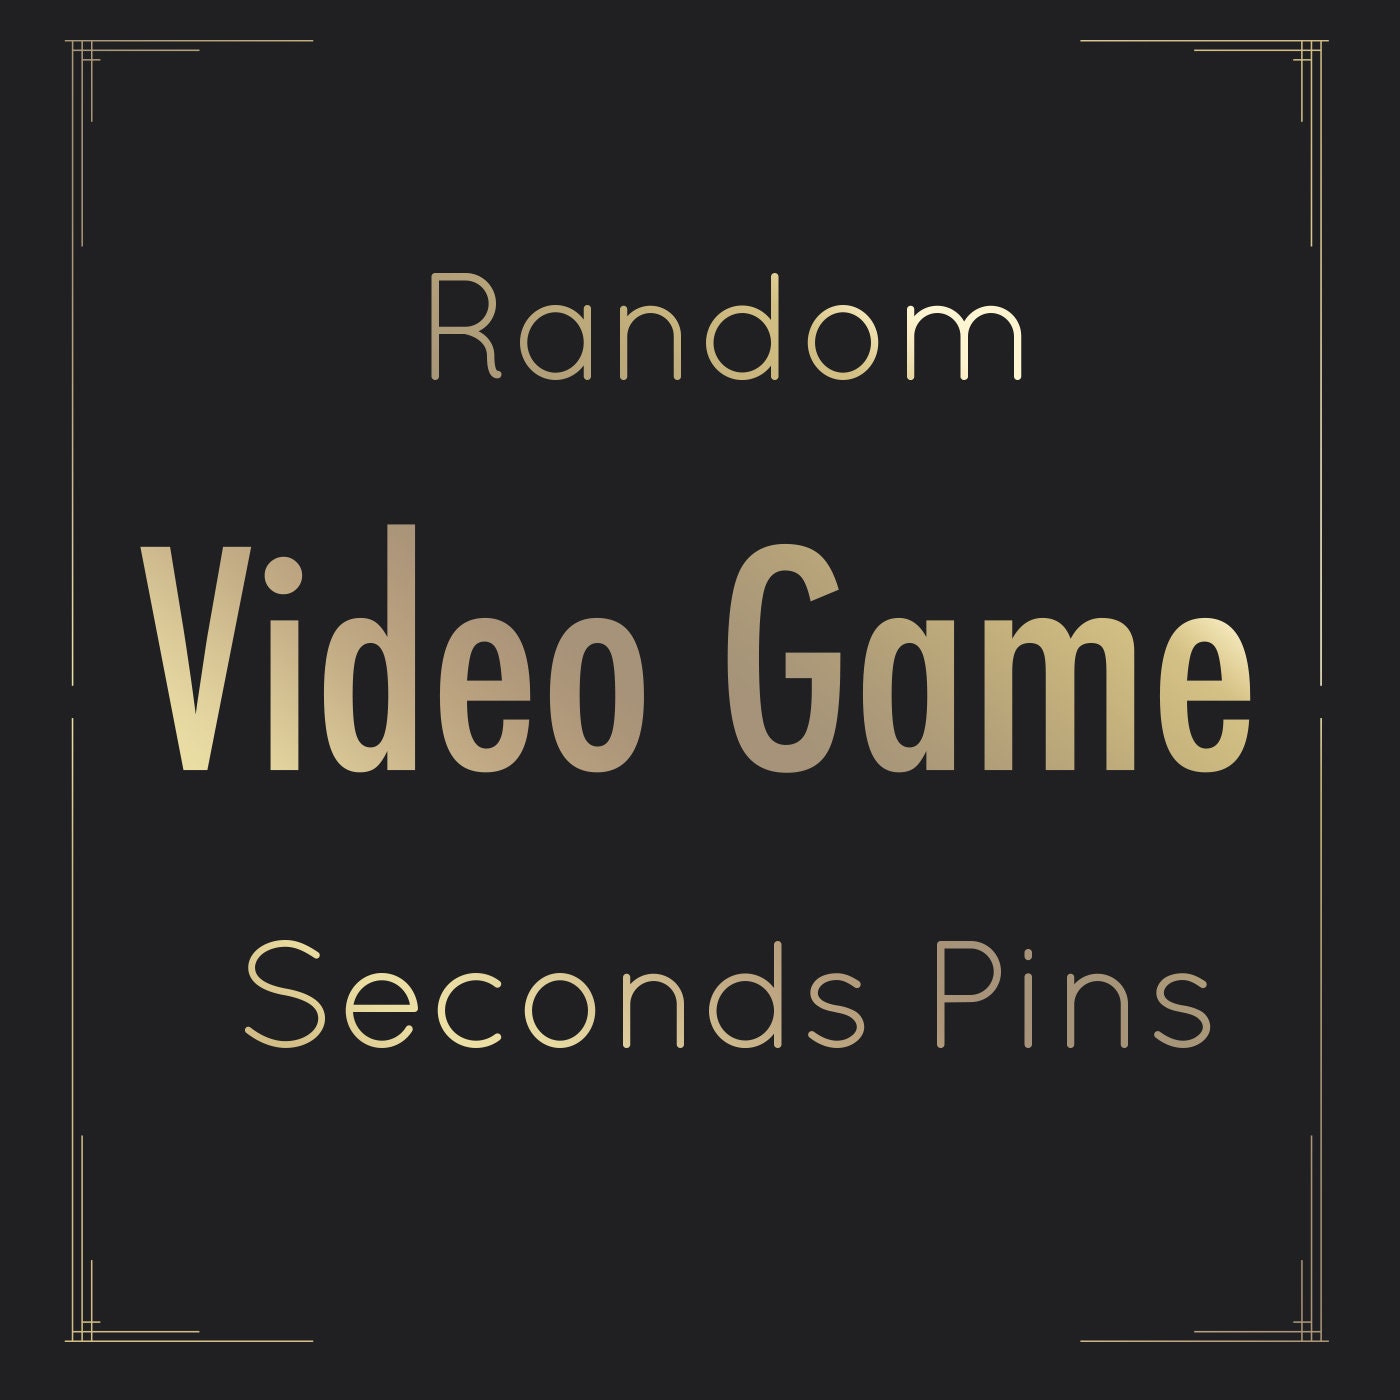 Pin on random